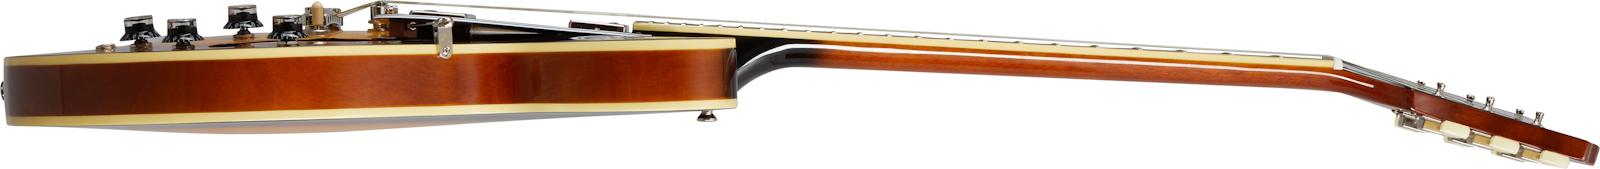 Epiphone Es-335 Inspired By Gibson Original 2h Ht Rw - Vintage Sunburst - Semi hollow elektriche gitaar - Variation 1